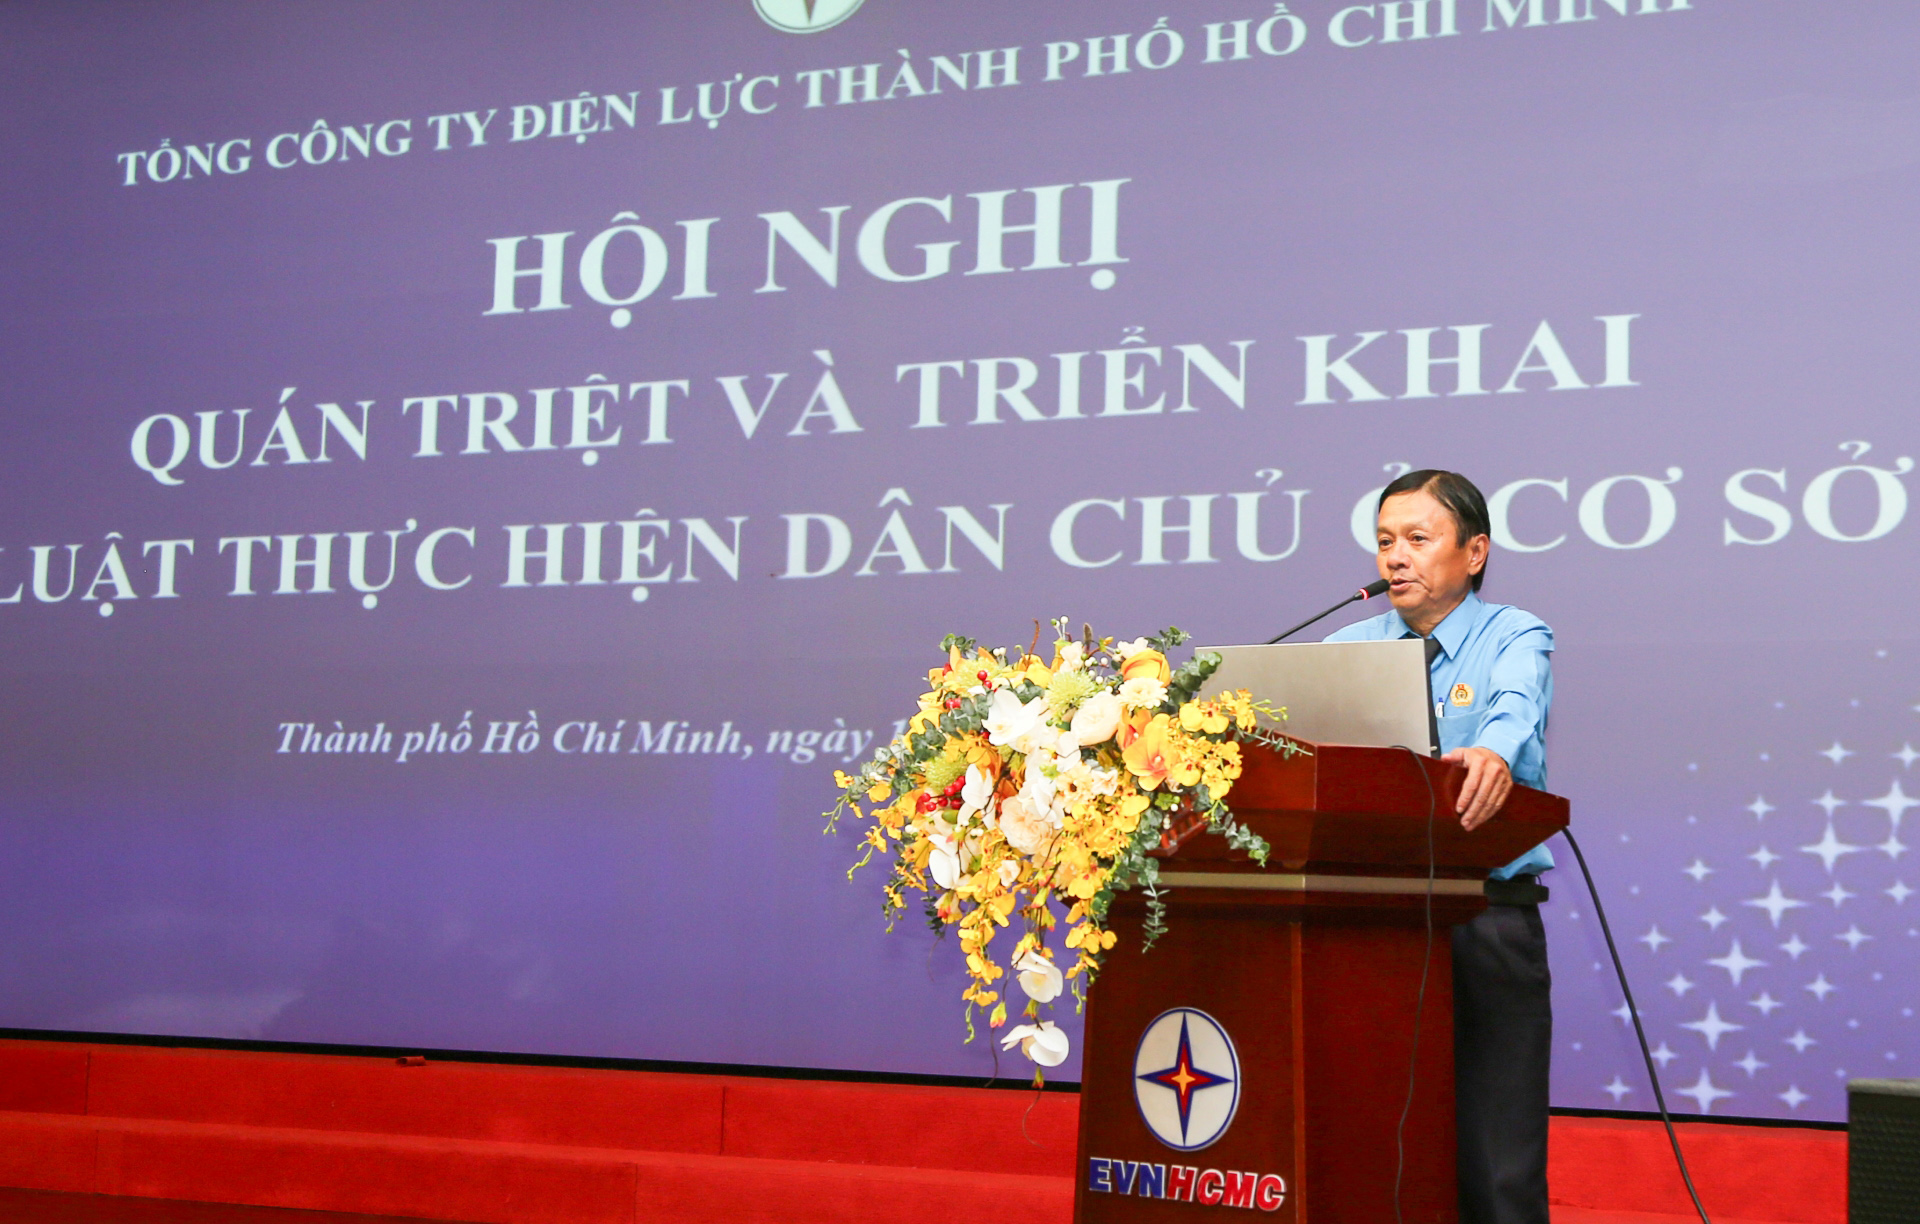 Luật gia Trần Văn Triều – Giám đốc Trung tâm Tư vấn pháp luật thuộc Liên đoàn Lao động TP. Hồ Chí Minh phổ biến Luật Thực hiện dân chủ ở cơ sở năm 2022 tại hội nghị.